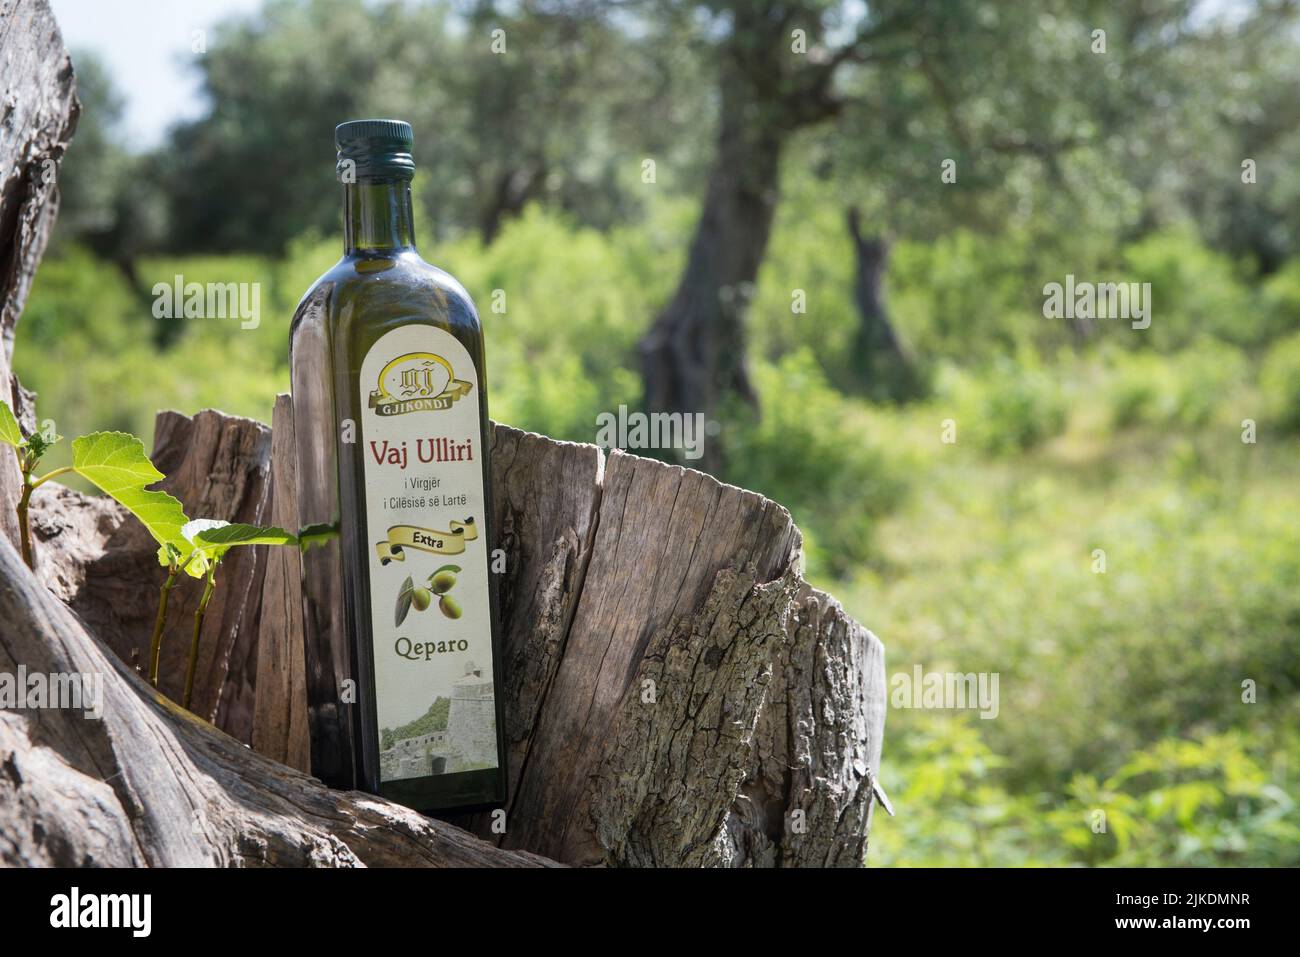 Bottiglia di olio d'oliva della famiglia Gjikondi, produttore di olio d'oliva a Qeparo, Costa ionica, Albania, Europa sudorientale. Foto Stock